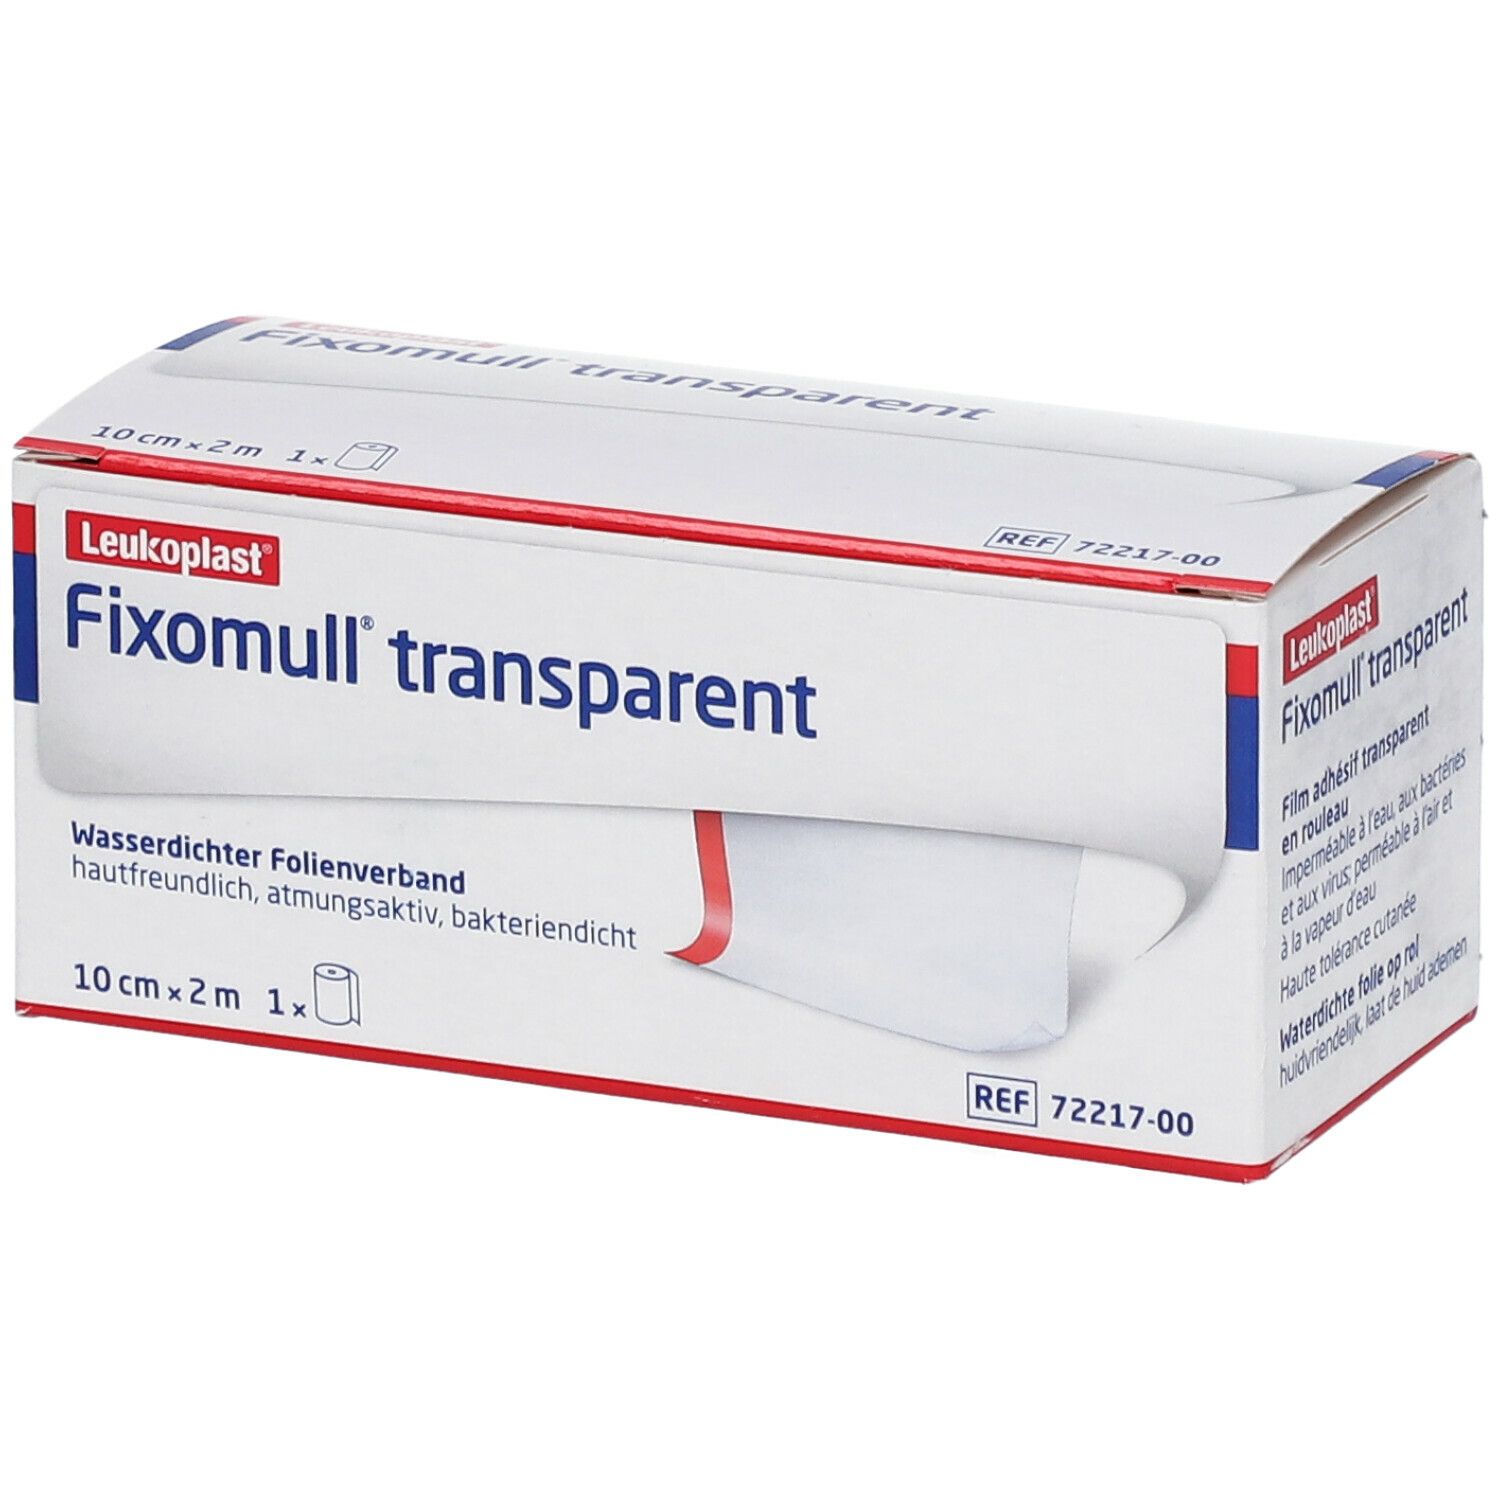 Fixomull® Transparant Film de Fixation Transparant Imperméable 10 cm x 2 m